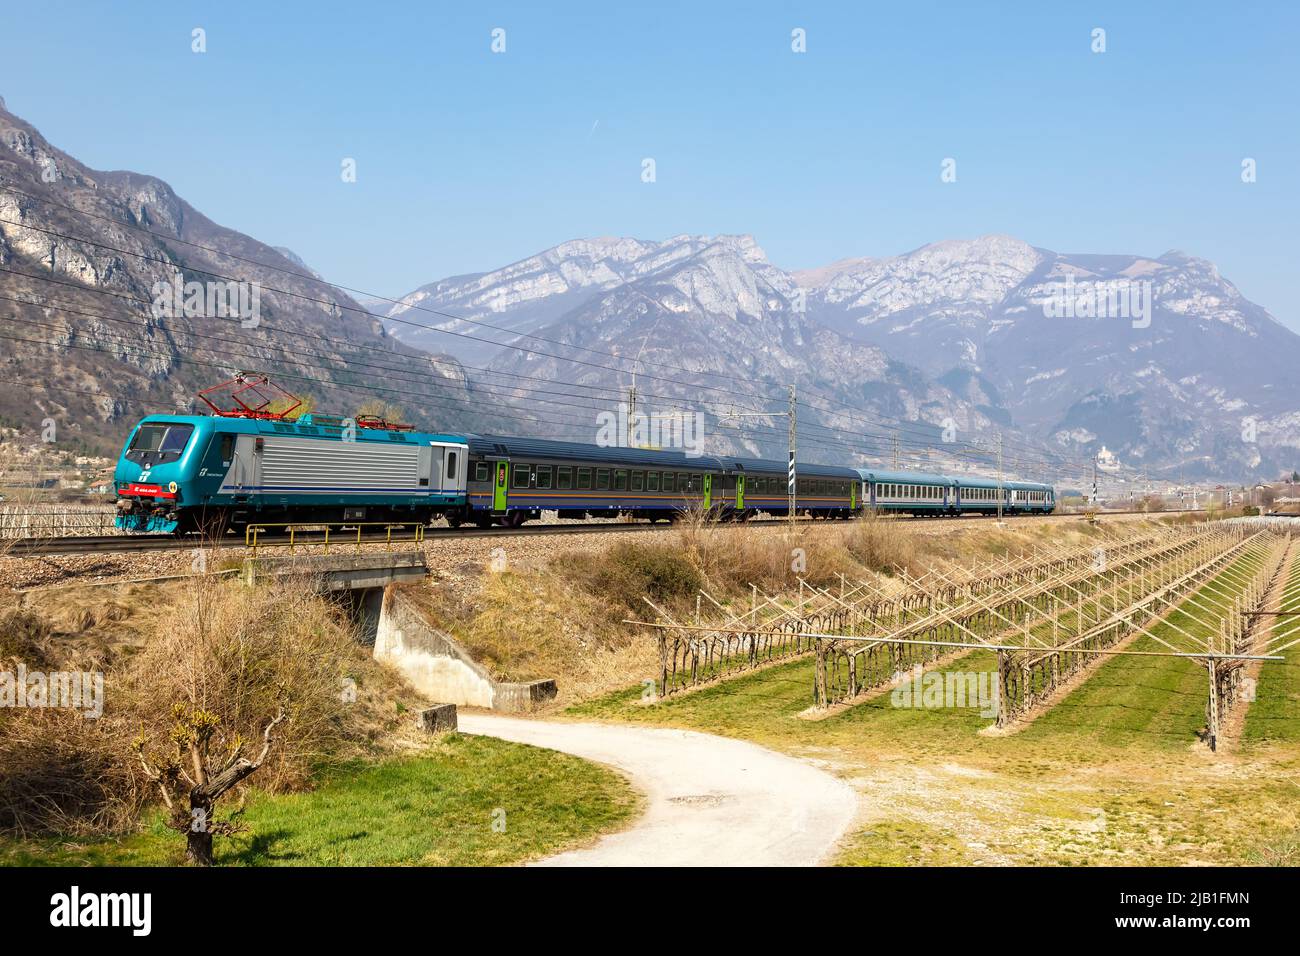 Avio, Italy - March 25, 2022: EuroCity train of Trenitalia on Brenner Railway near Avio, Italy. Stock Photo